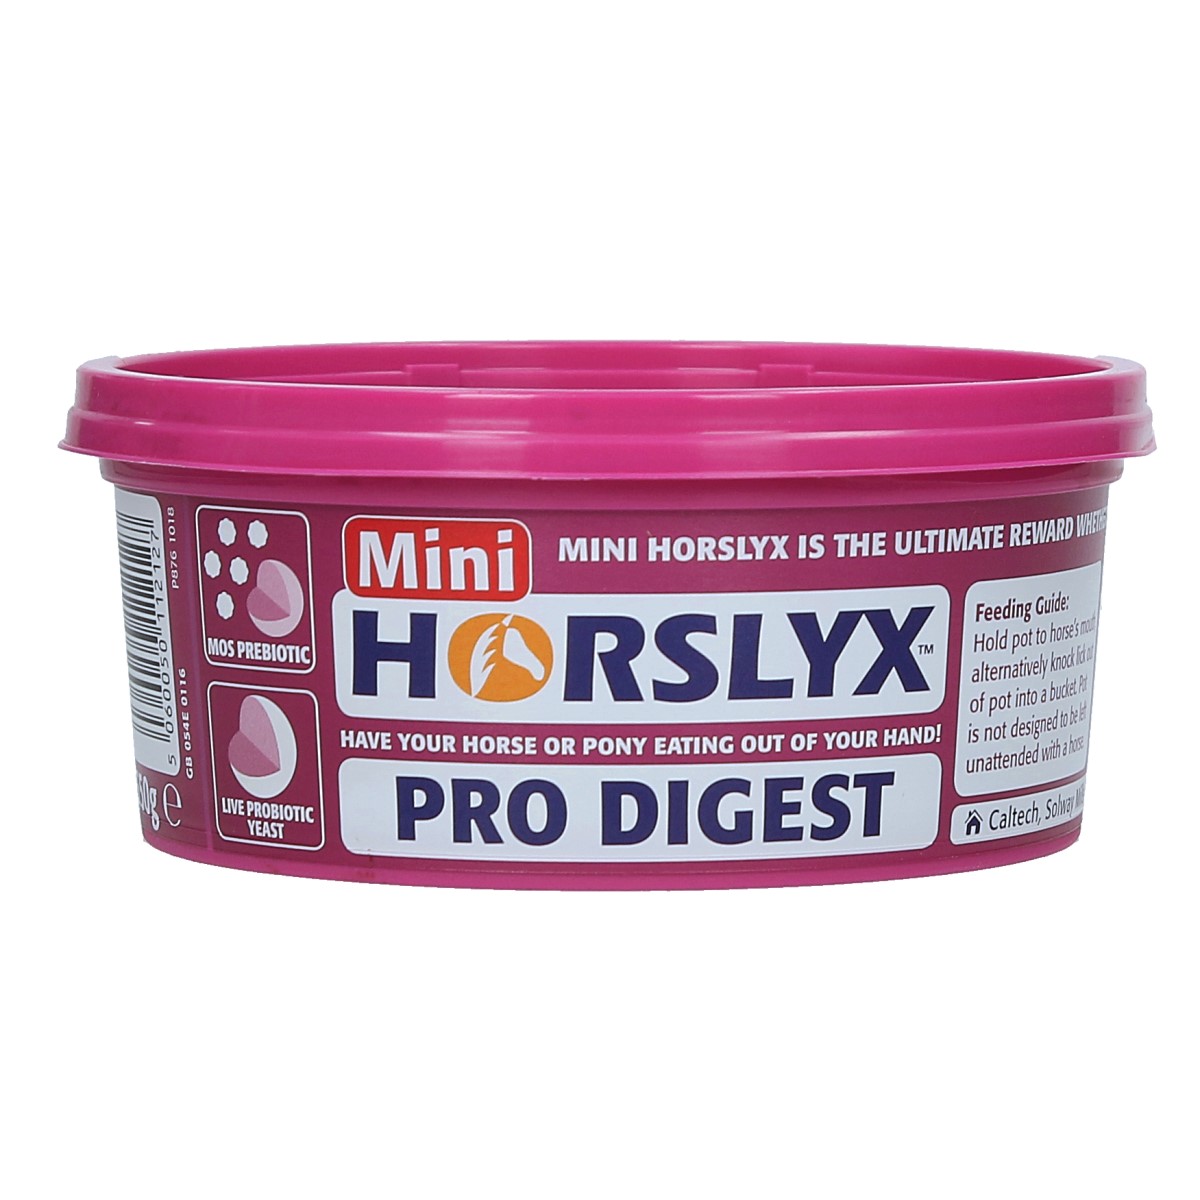 Liksteen Horslyx Pro Digestliksteen Horslyx Pro Digest Overige, 5 KILO